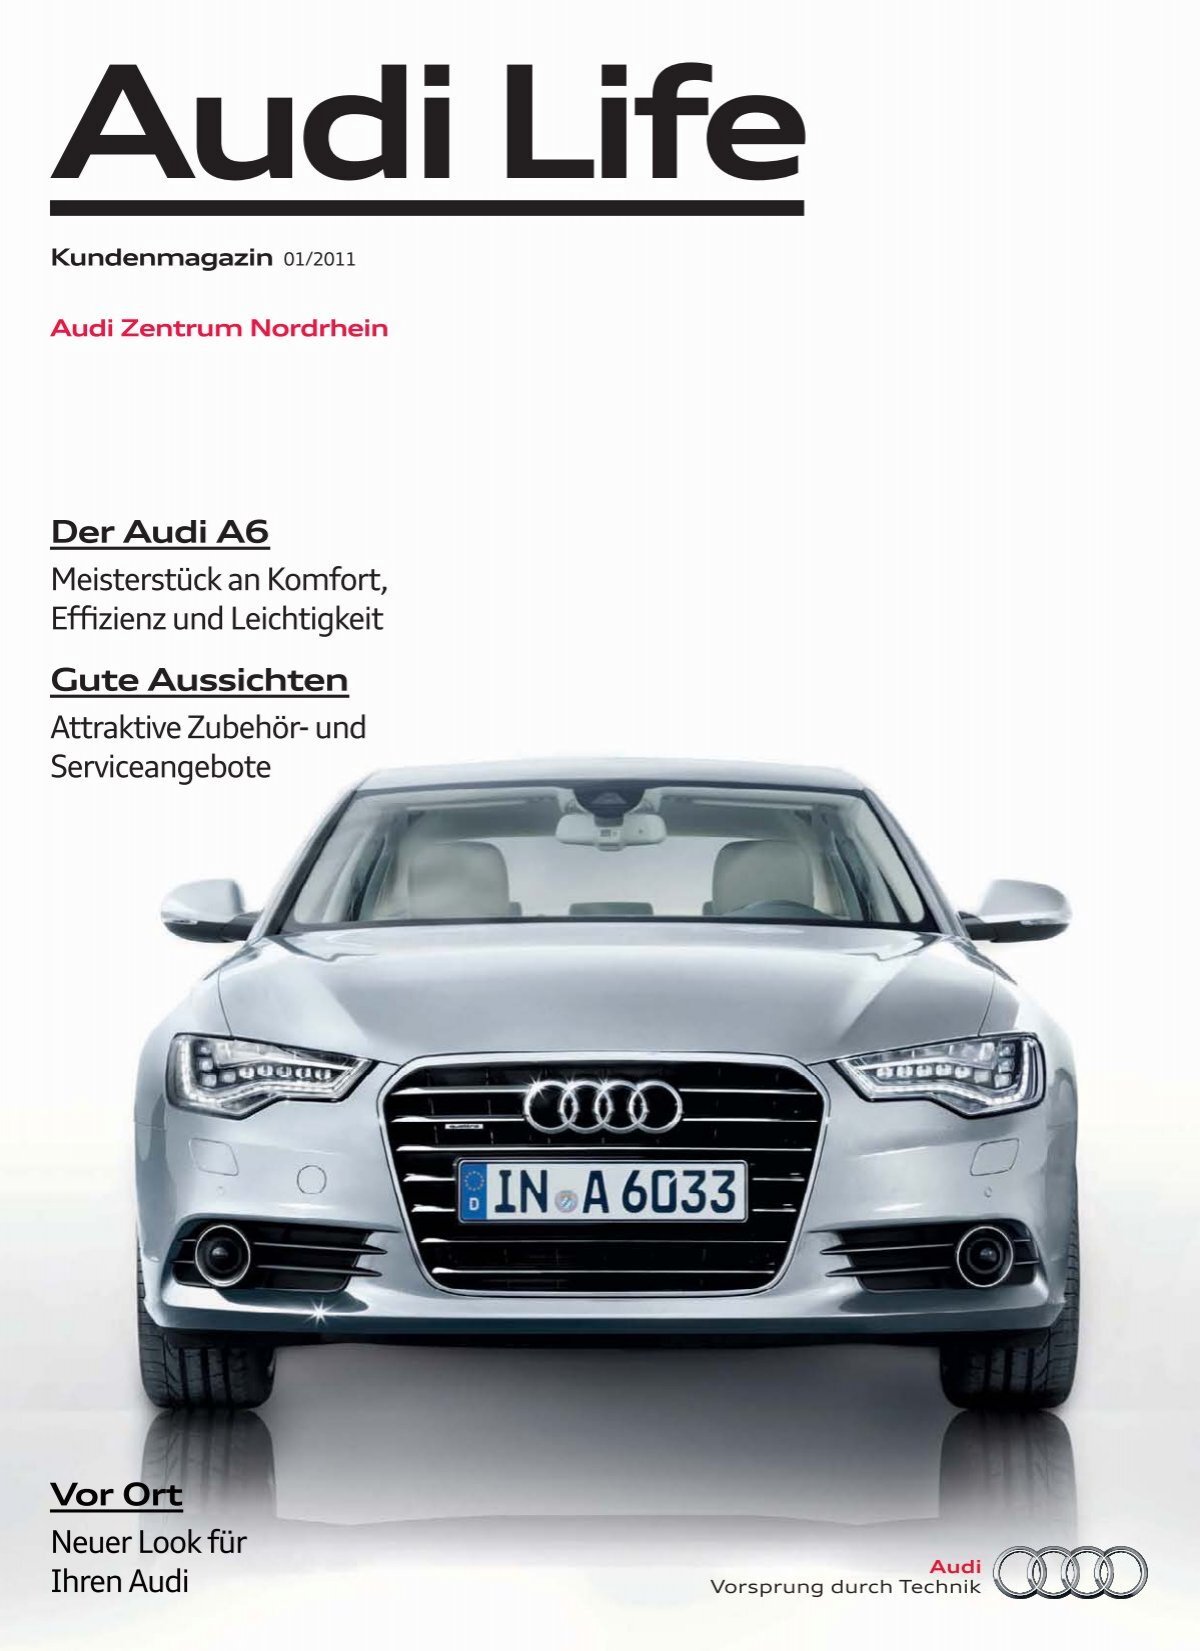 Vorbereitet Mit unseren attraktiven Zubehörangeboten Der Audi A1